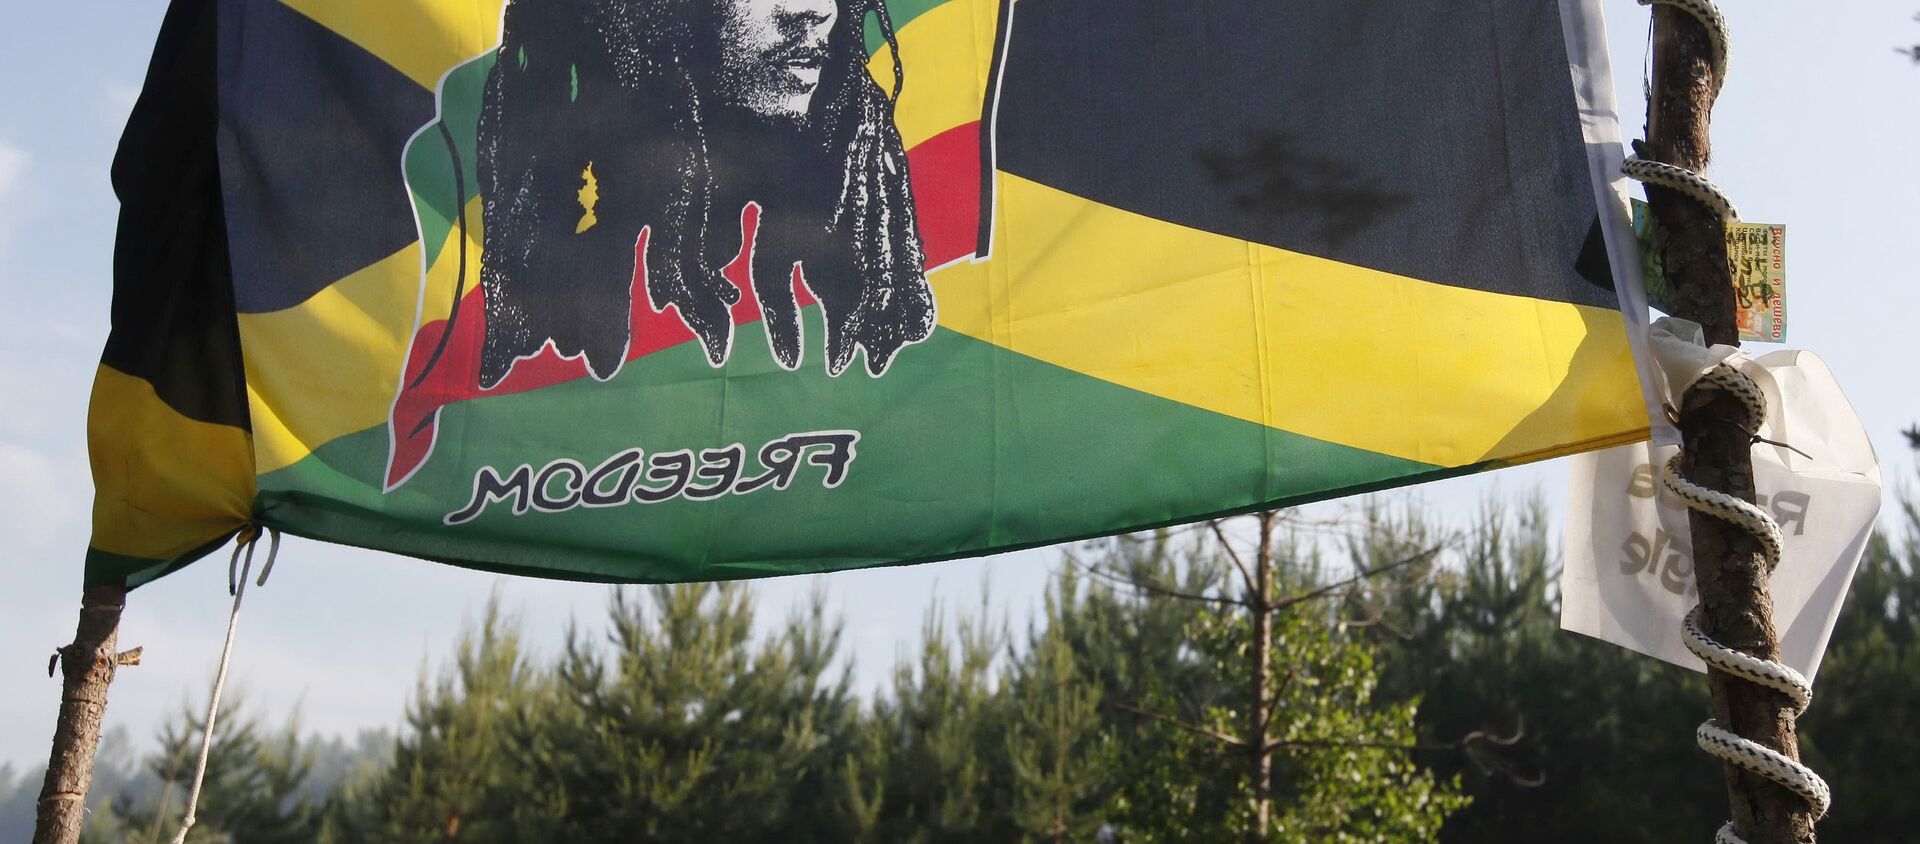 Bob Marley - Sputnik Türkiye, 1920, 29.12.2015